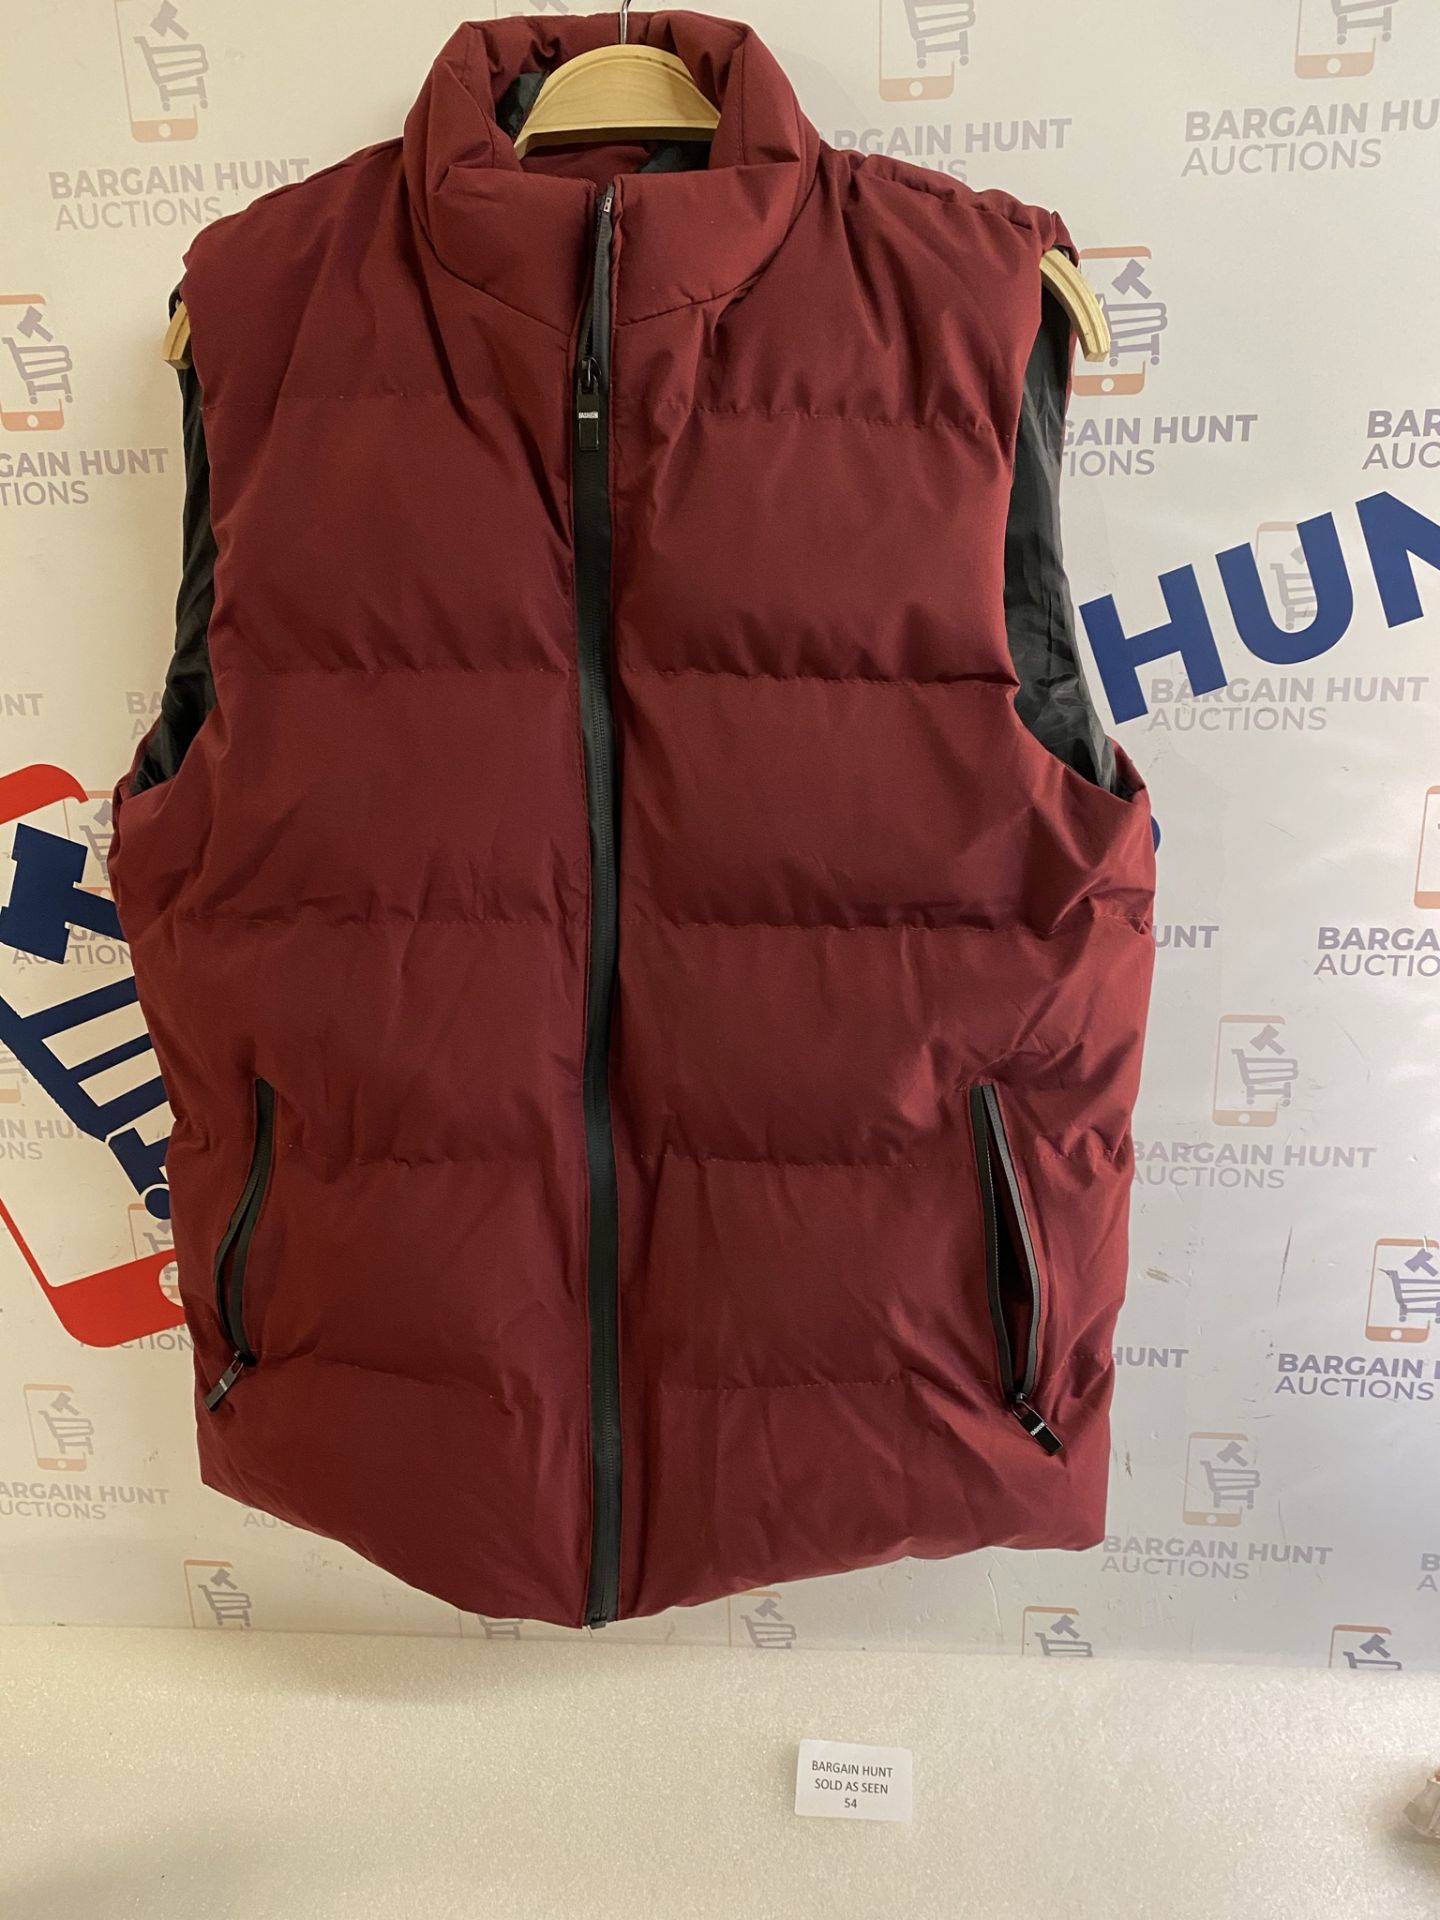 Men's Down Vest - Winter Warm Waterproof Vest Jacket, Medium RRP £31.99 - Image 2 of 2